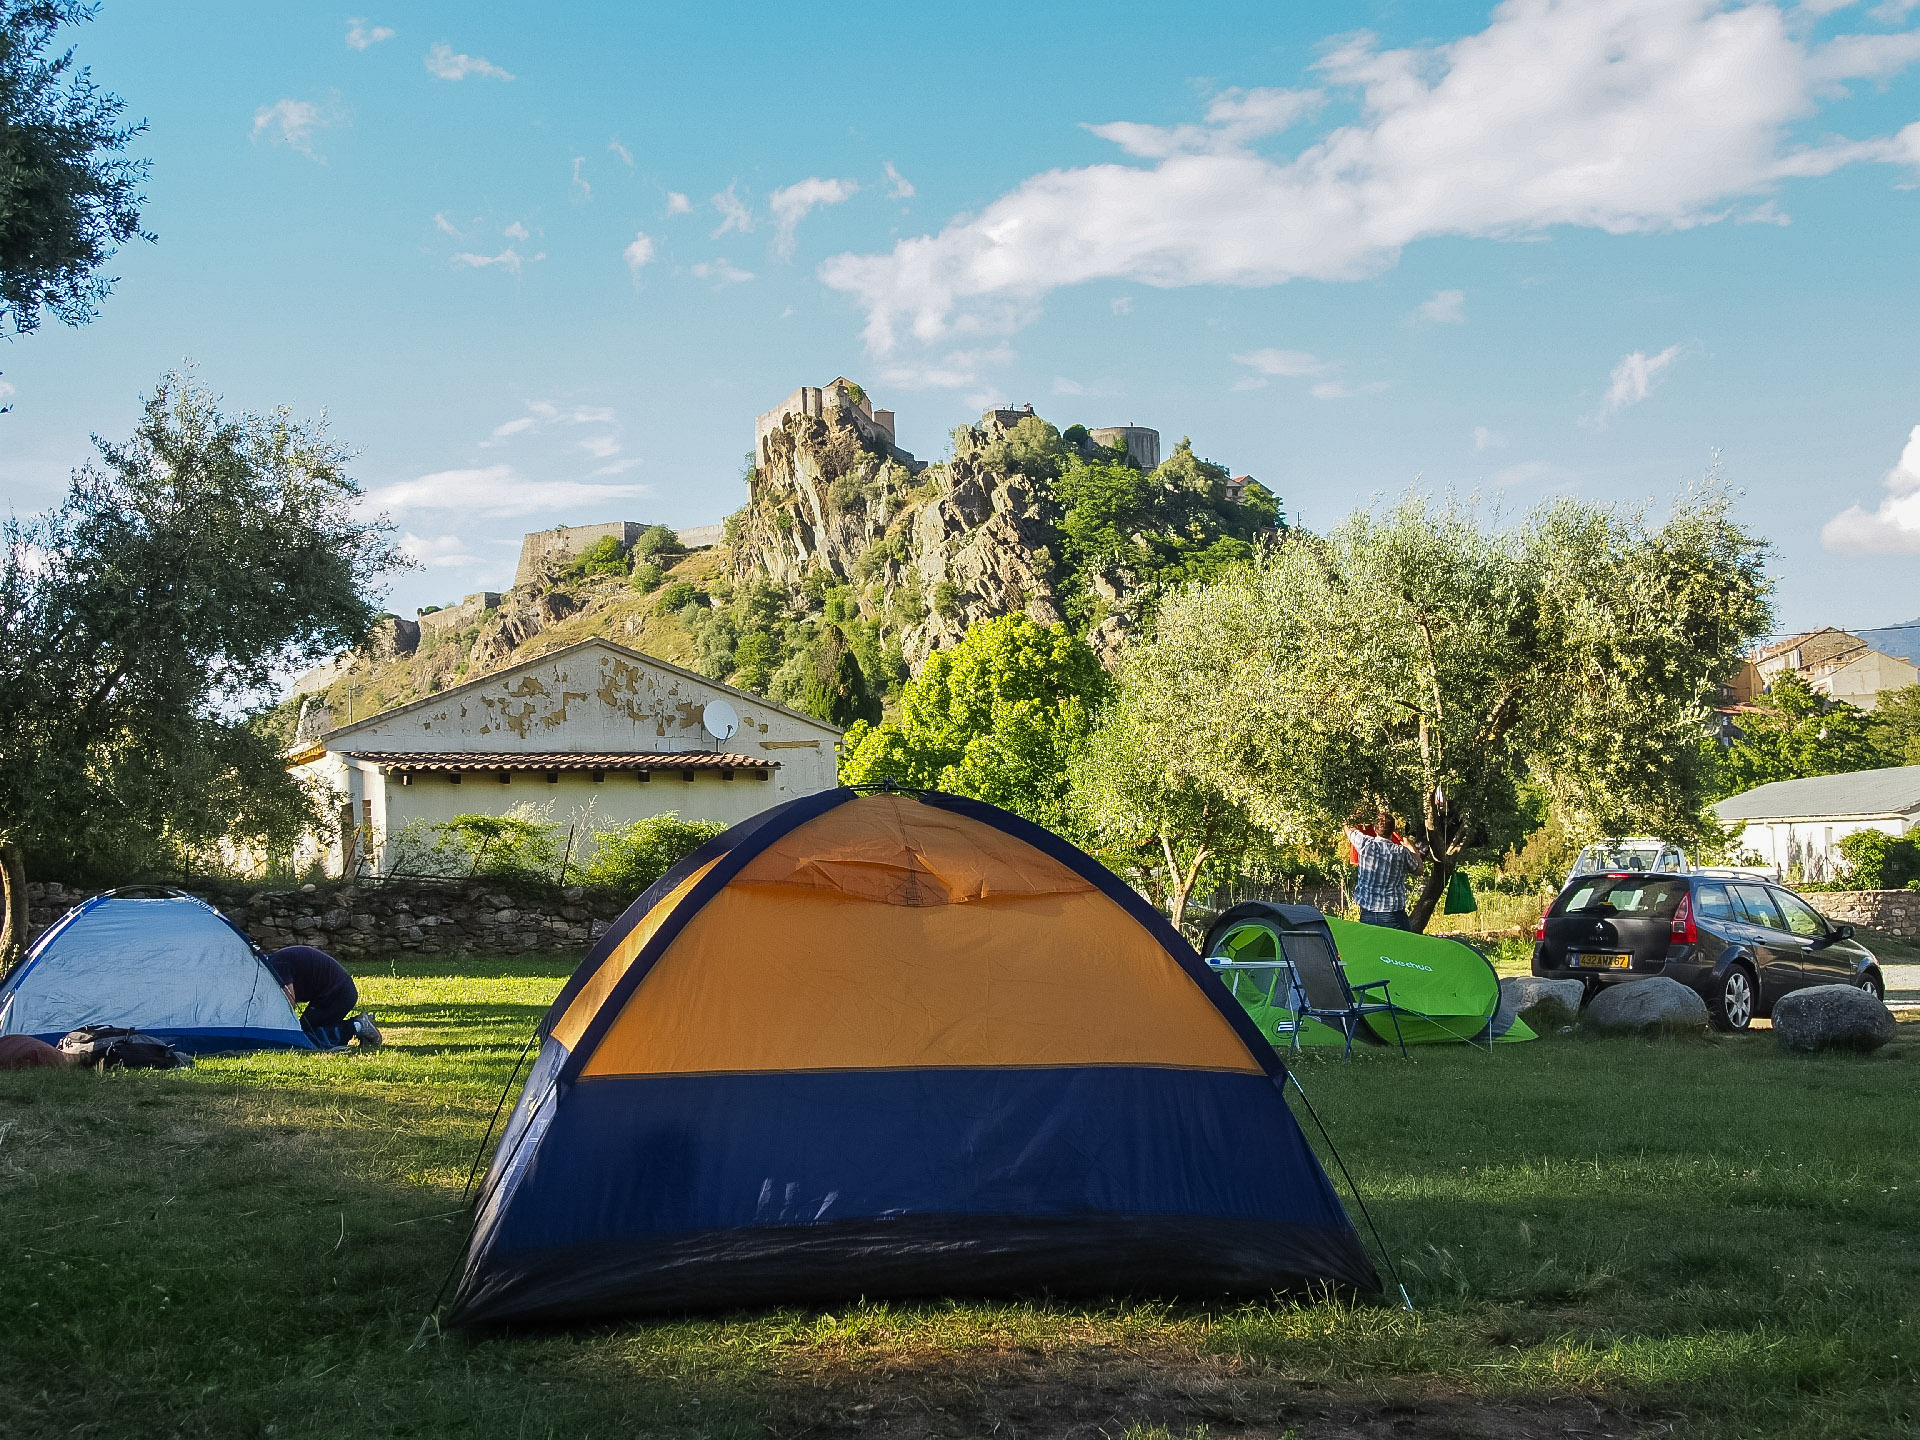 Camping U Sognu